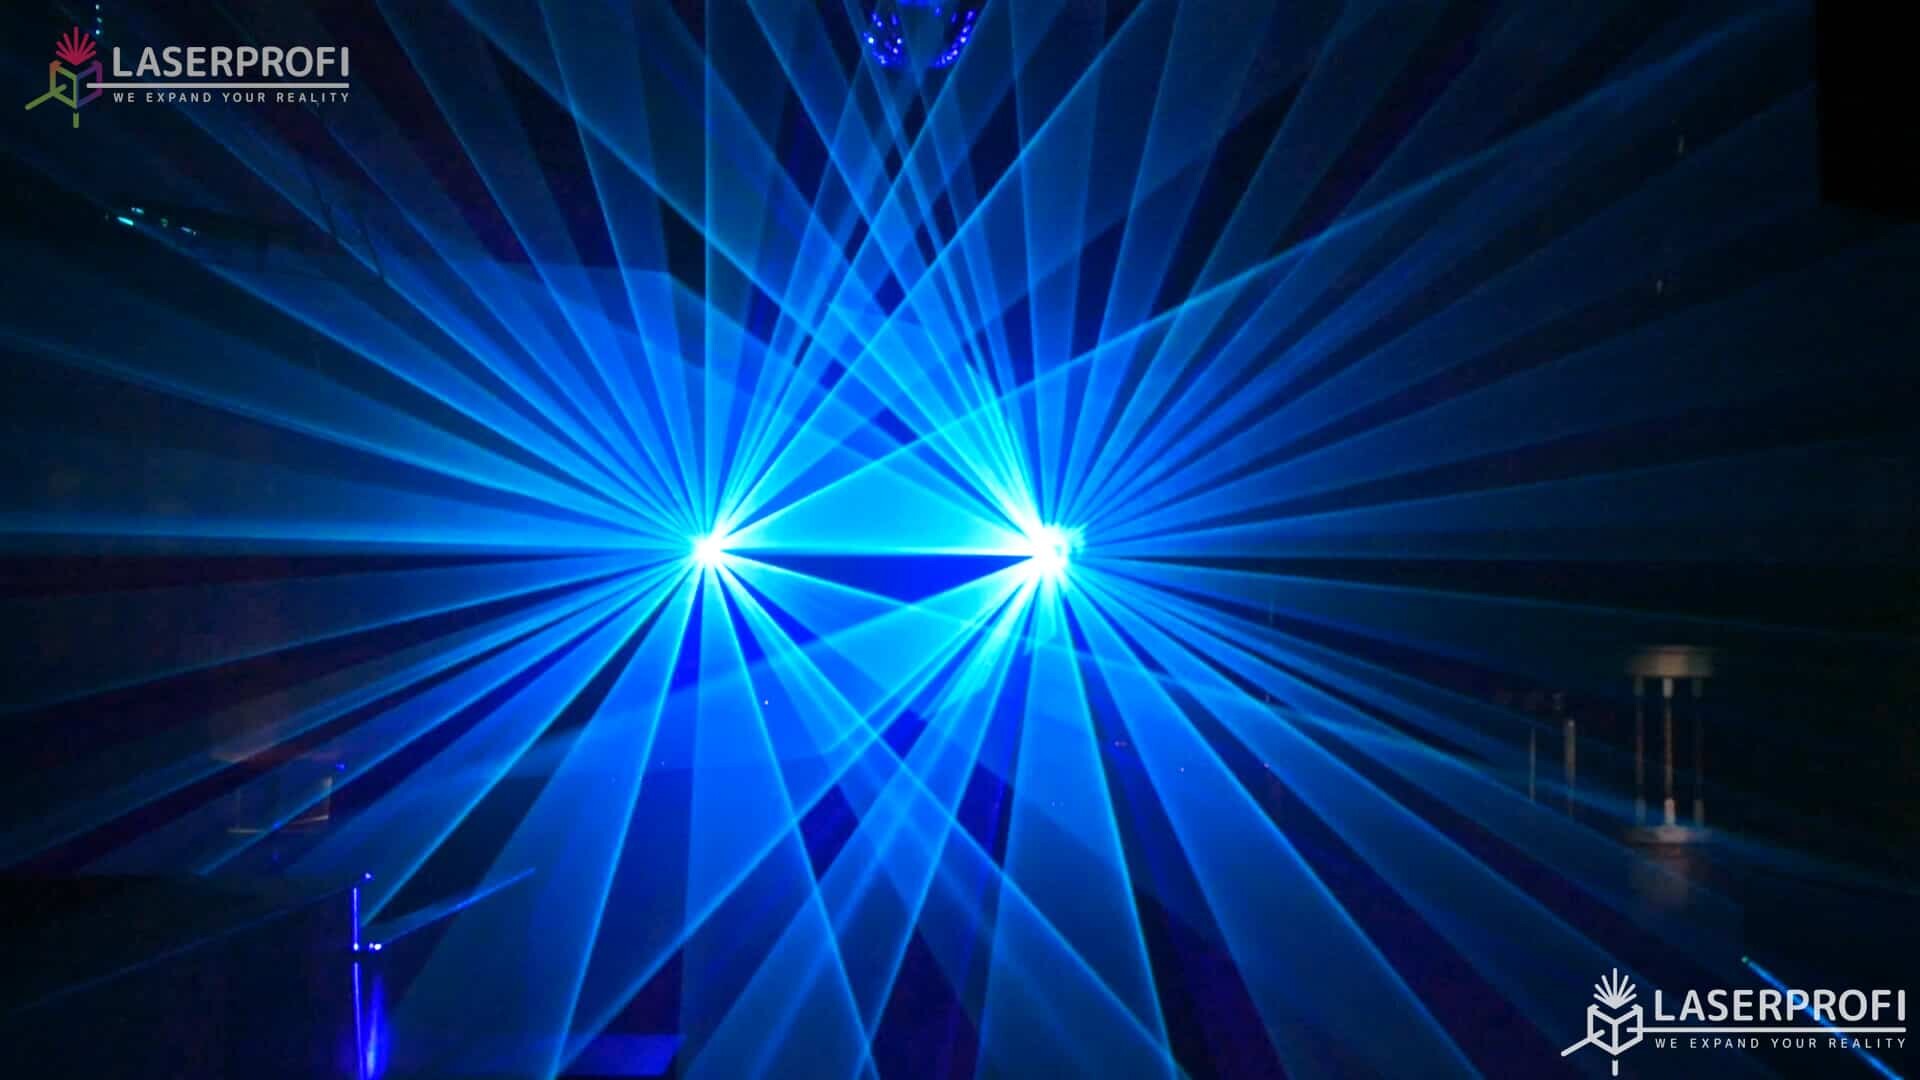 Pokaz laserowy przestrzenny - niebieskie wiązki laserowe